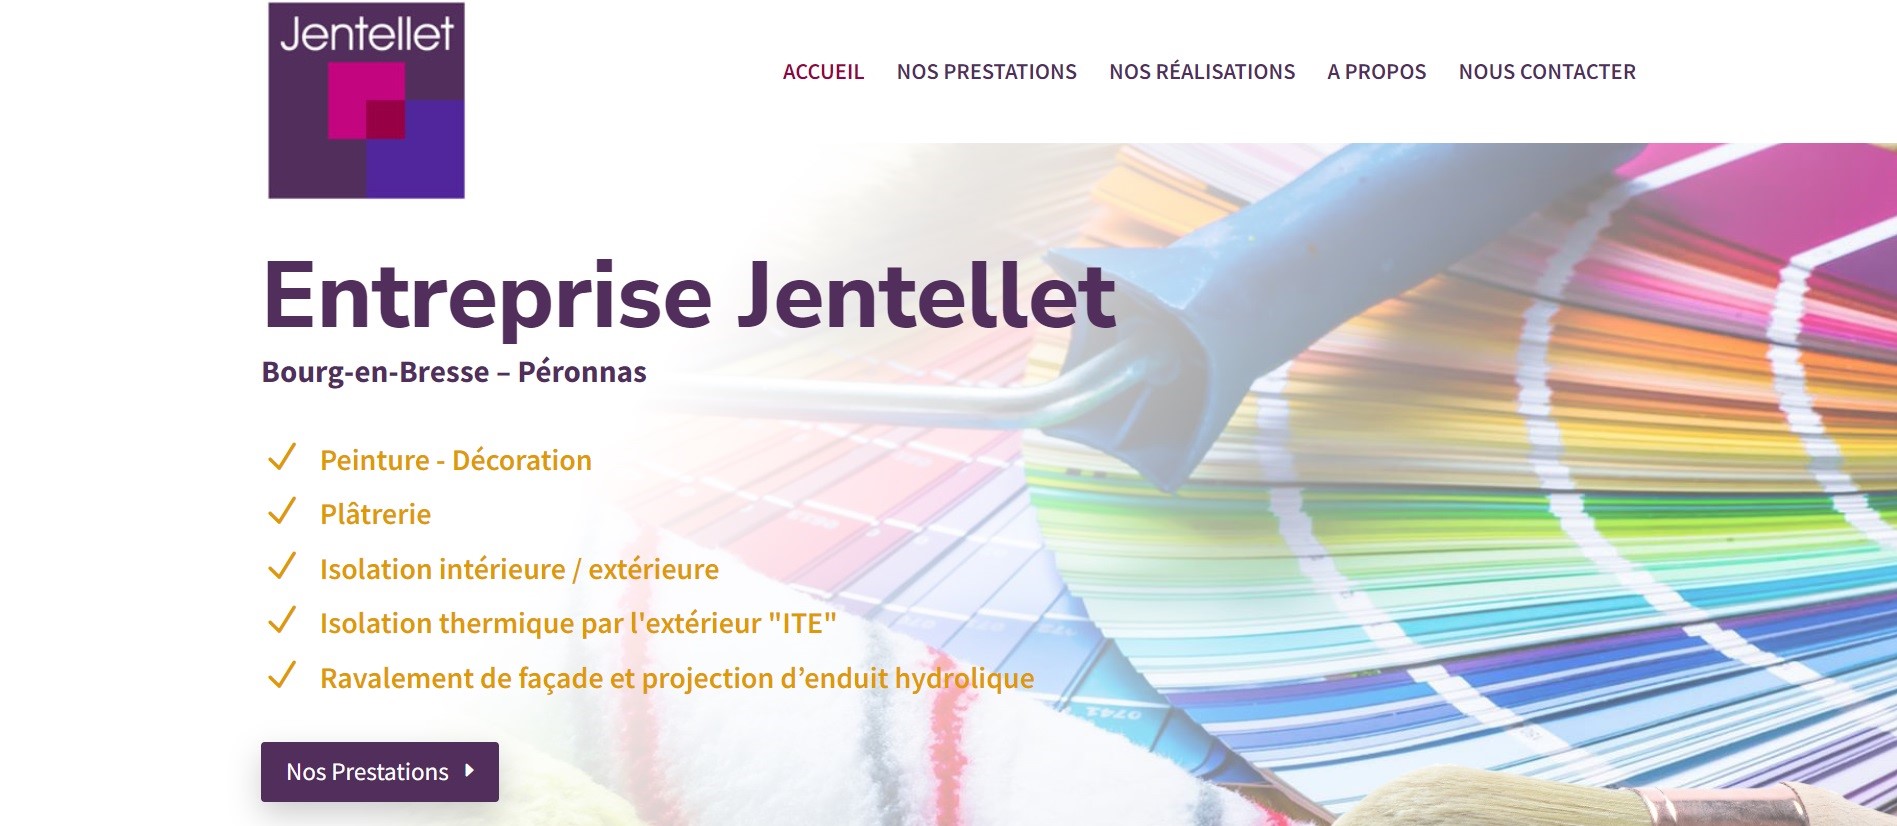  SARL JENTELLET - Entreprise d’Isolation de Bourg-en-Bresse